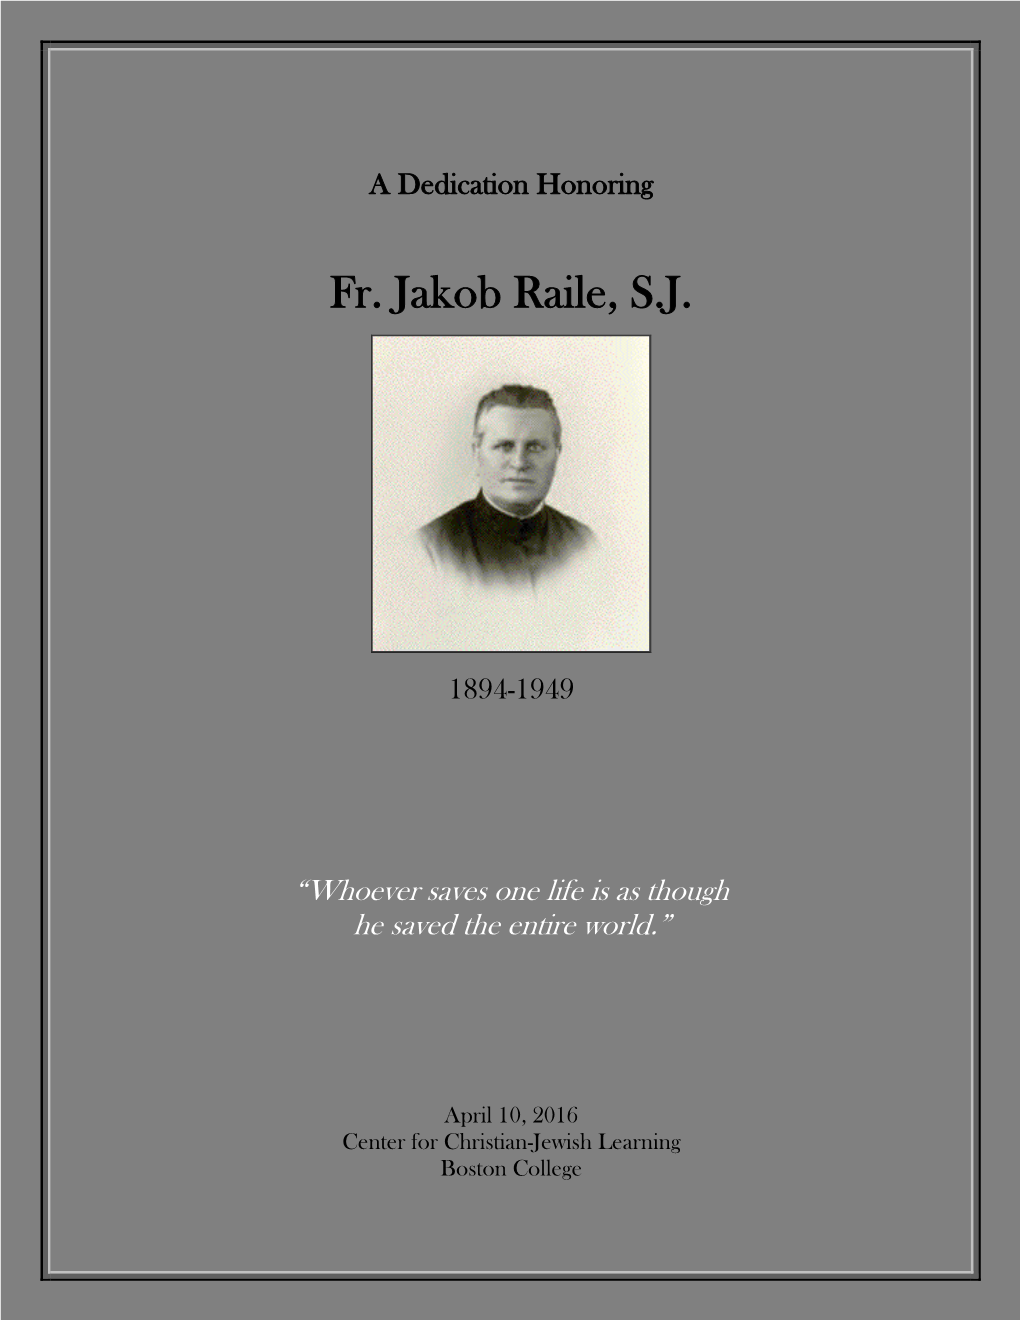 Fr. Jakob Raile, S.J